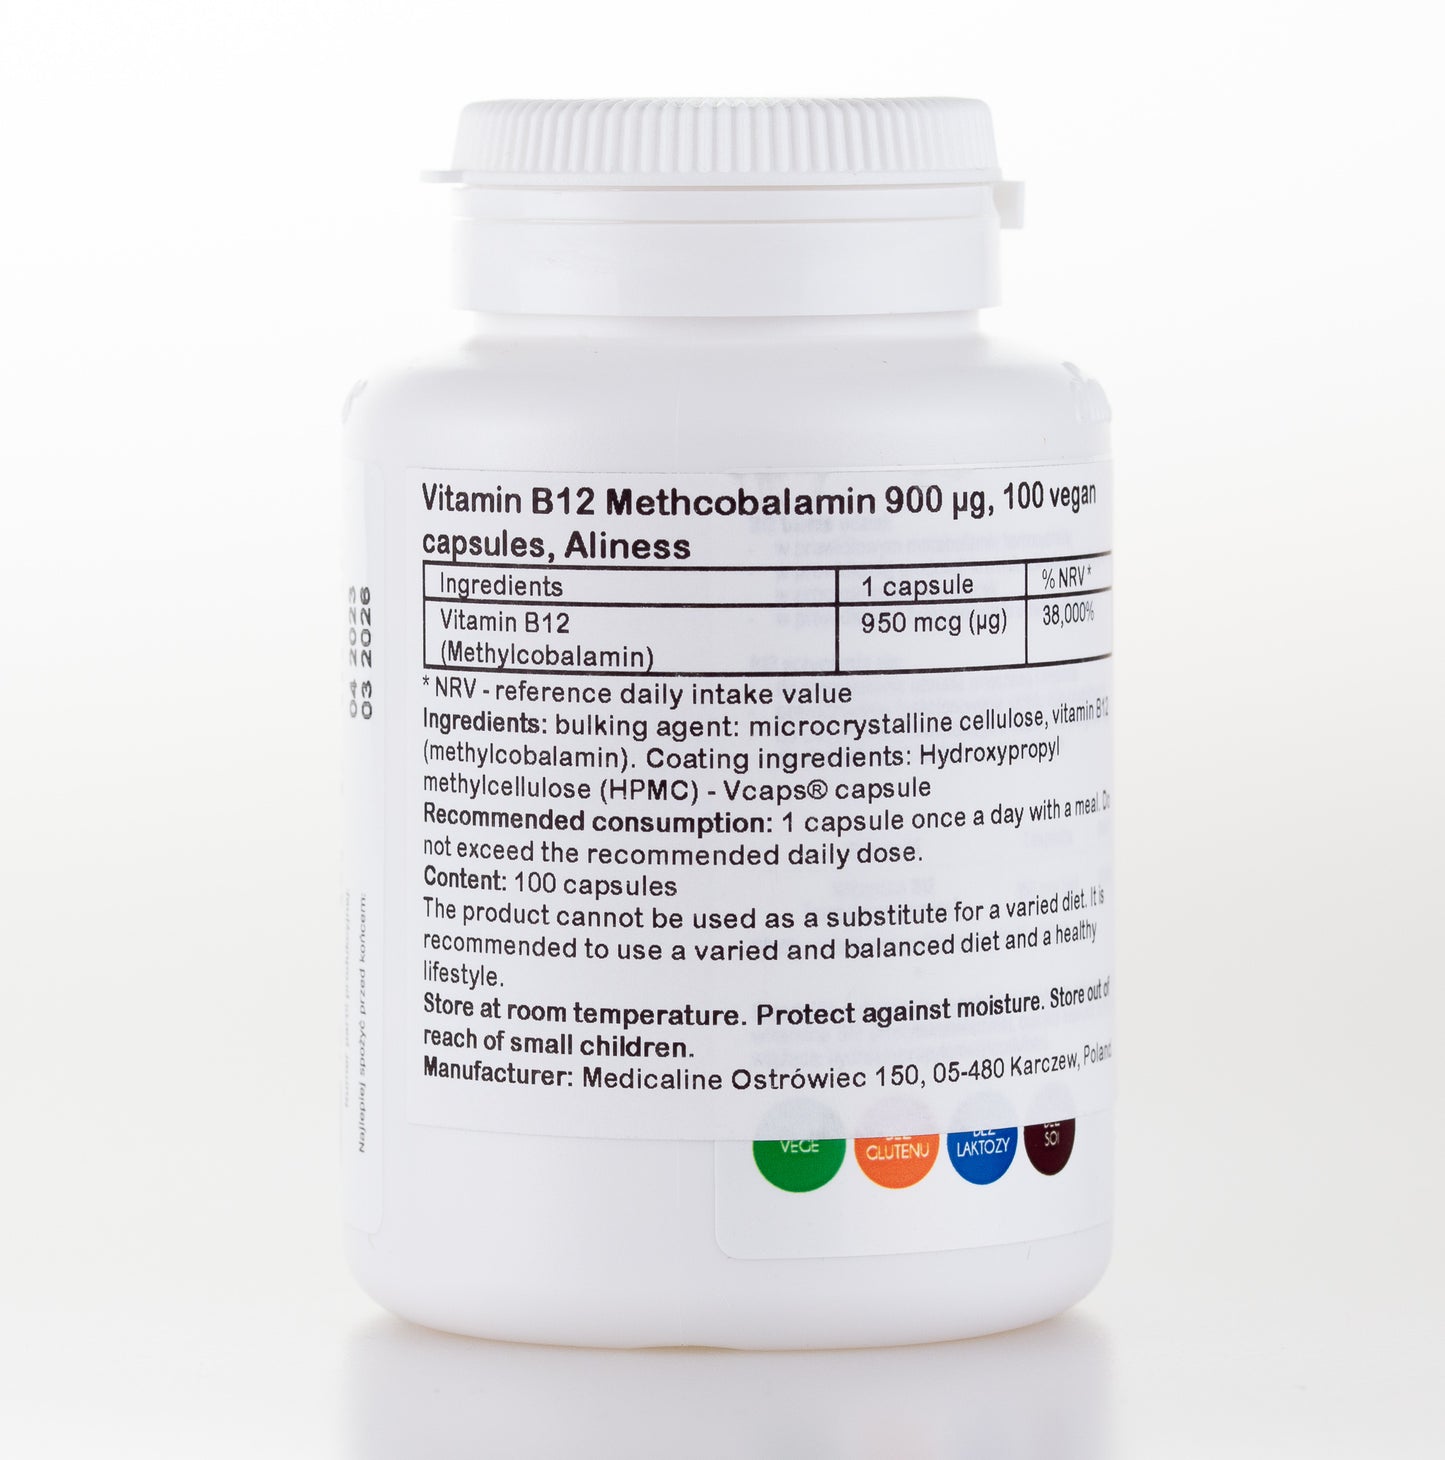 Vitamin B12 Methcobalamin 900 µg, 100 vegan capsules